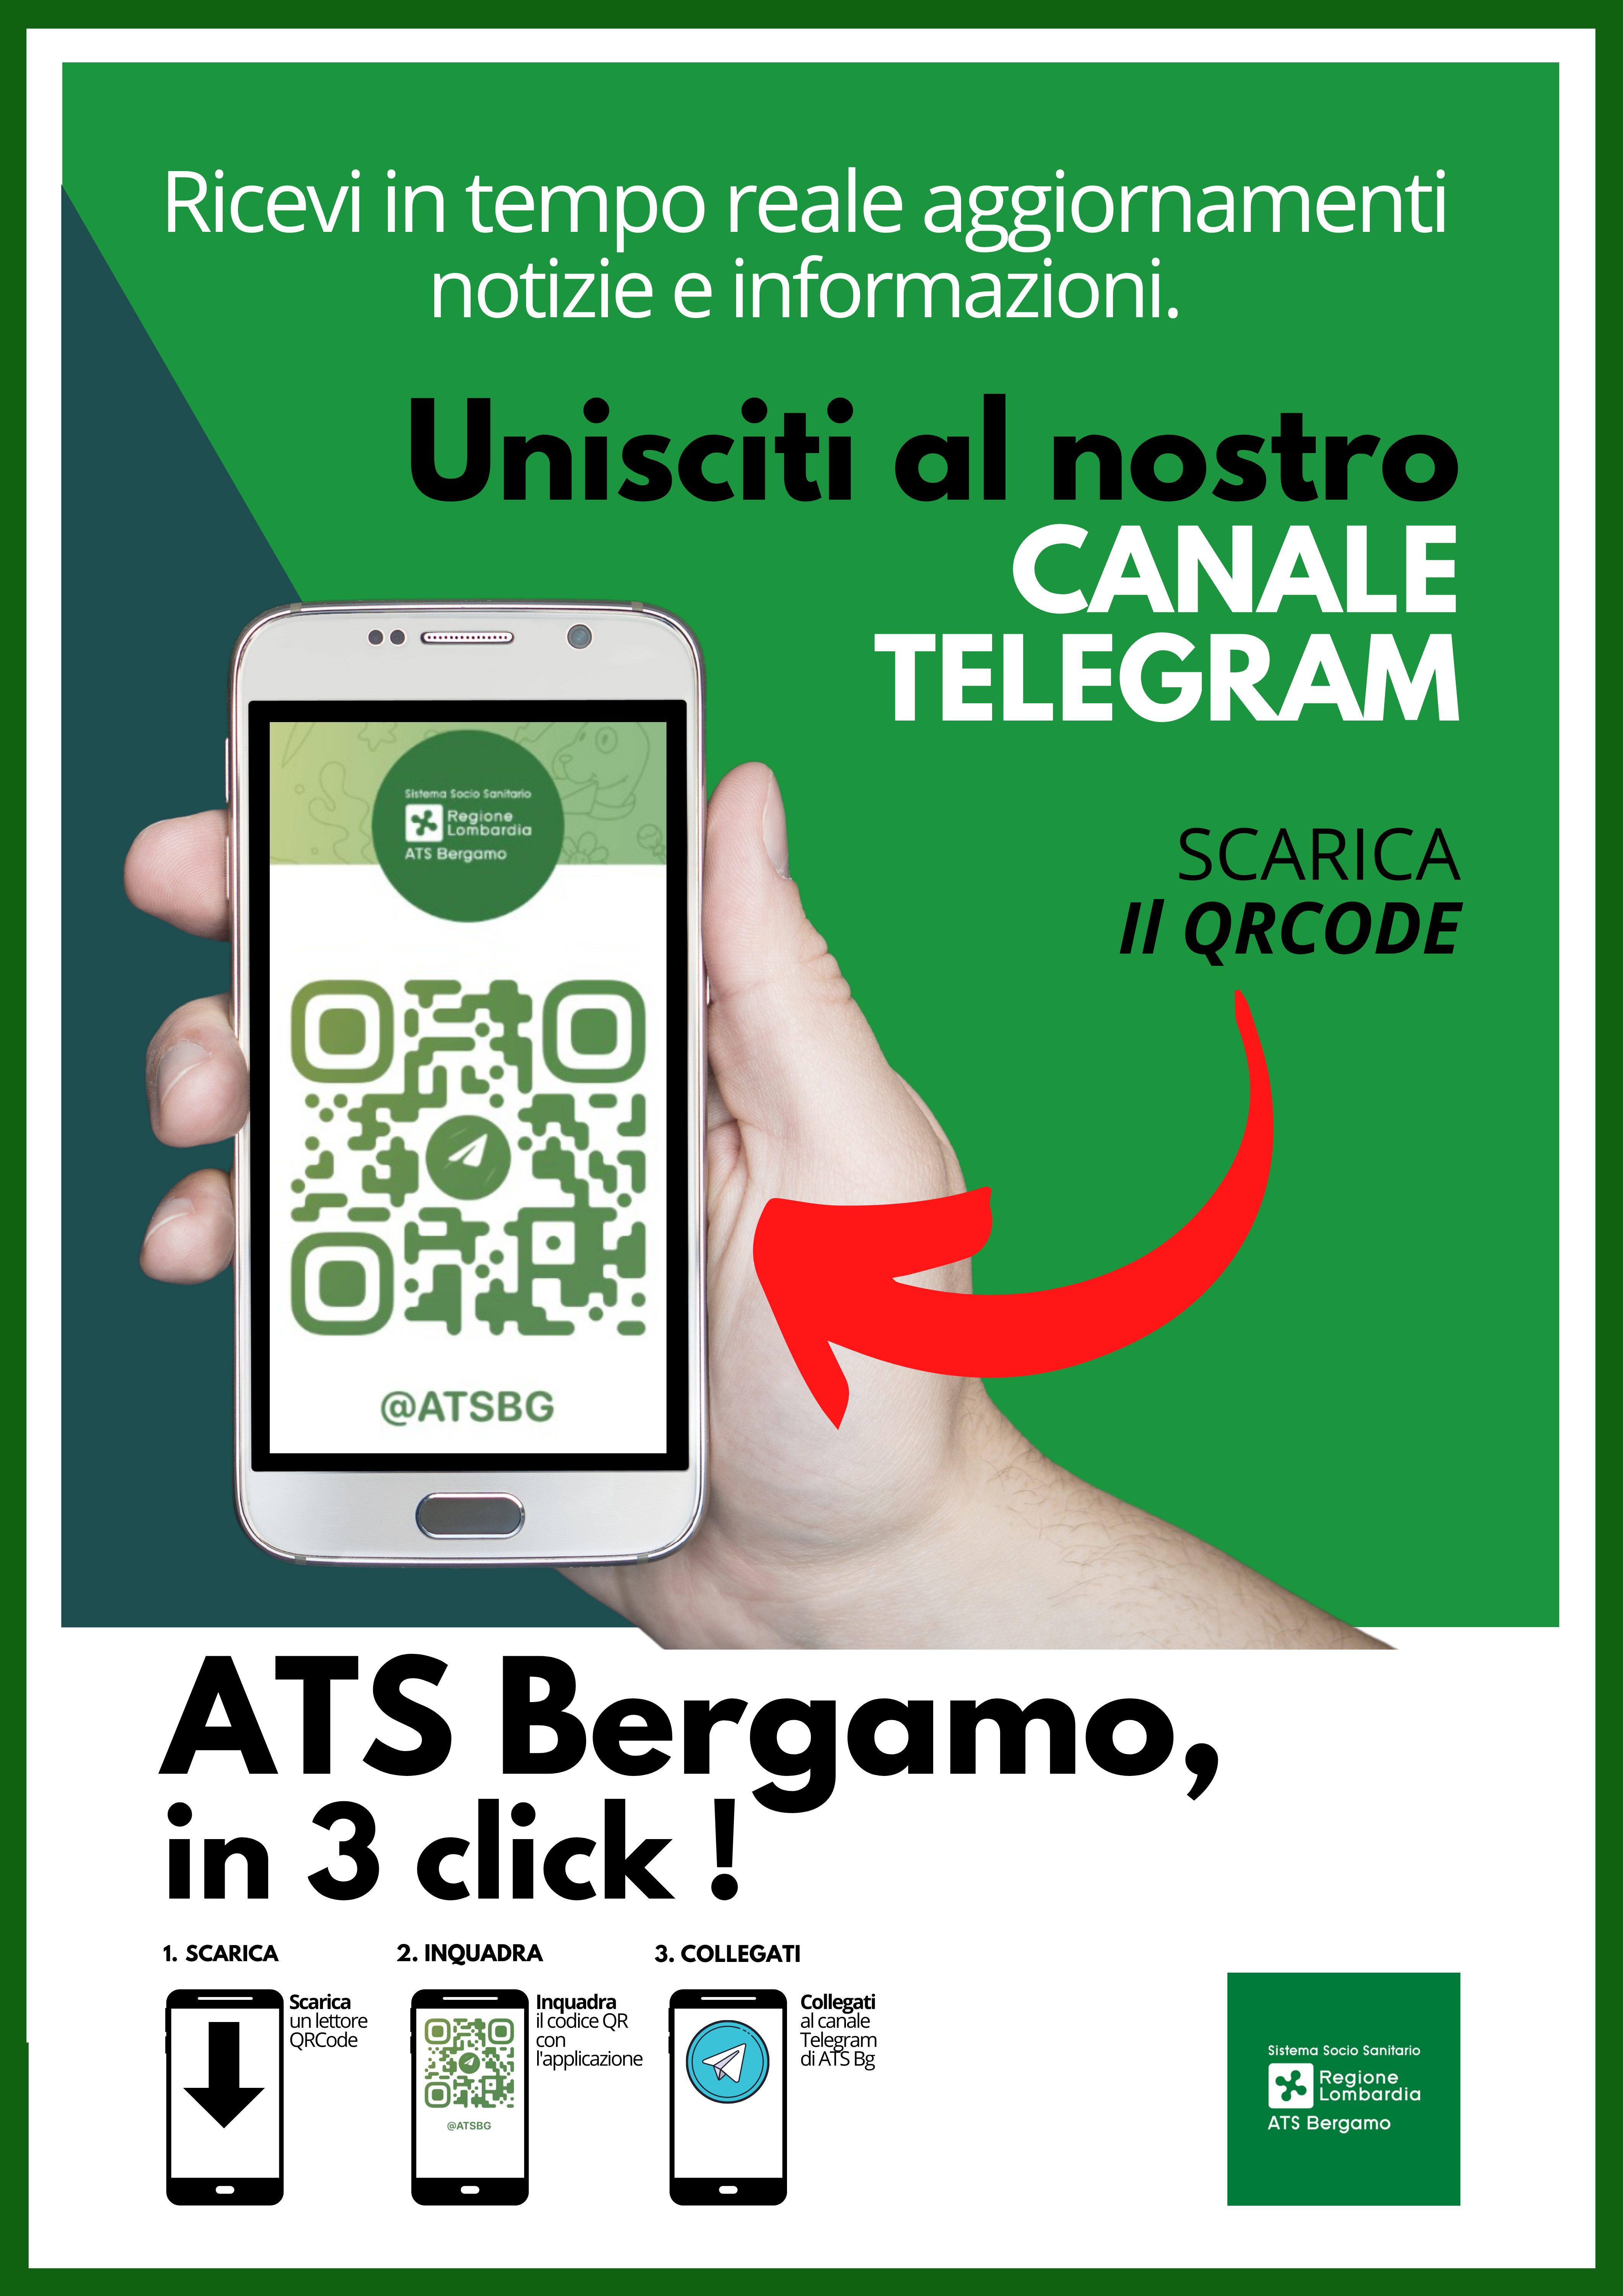 Immagine che raffigura ATS BERGAMO - Comunicazione di attivazione canale informativo su TELEGRAM